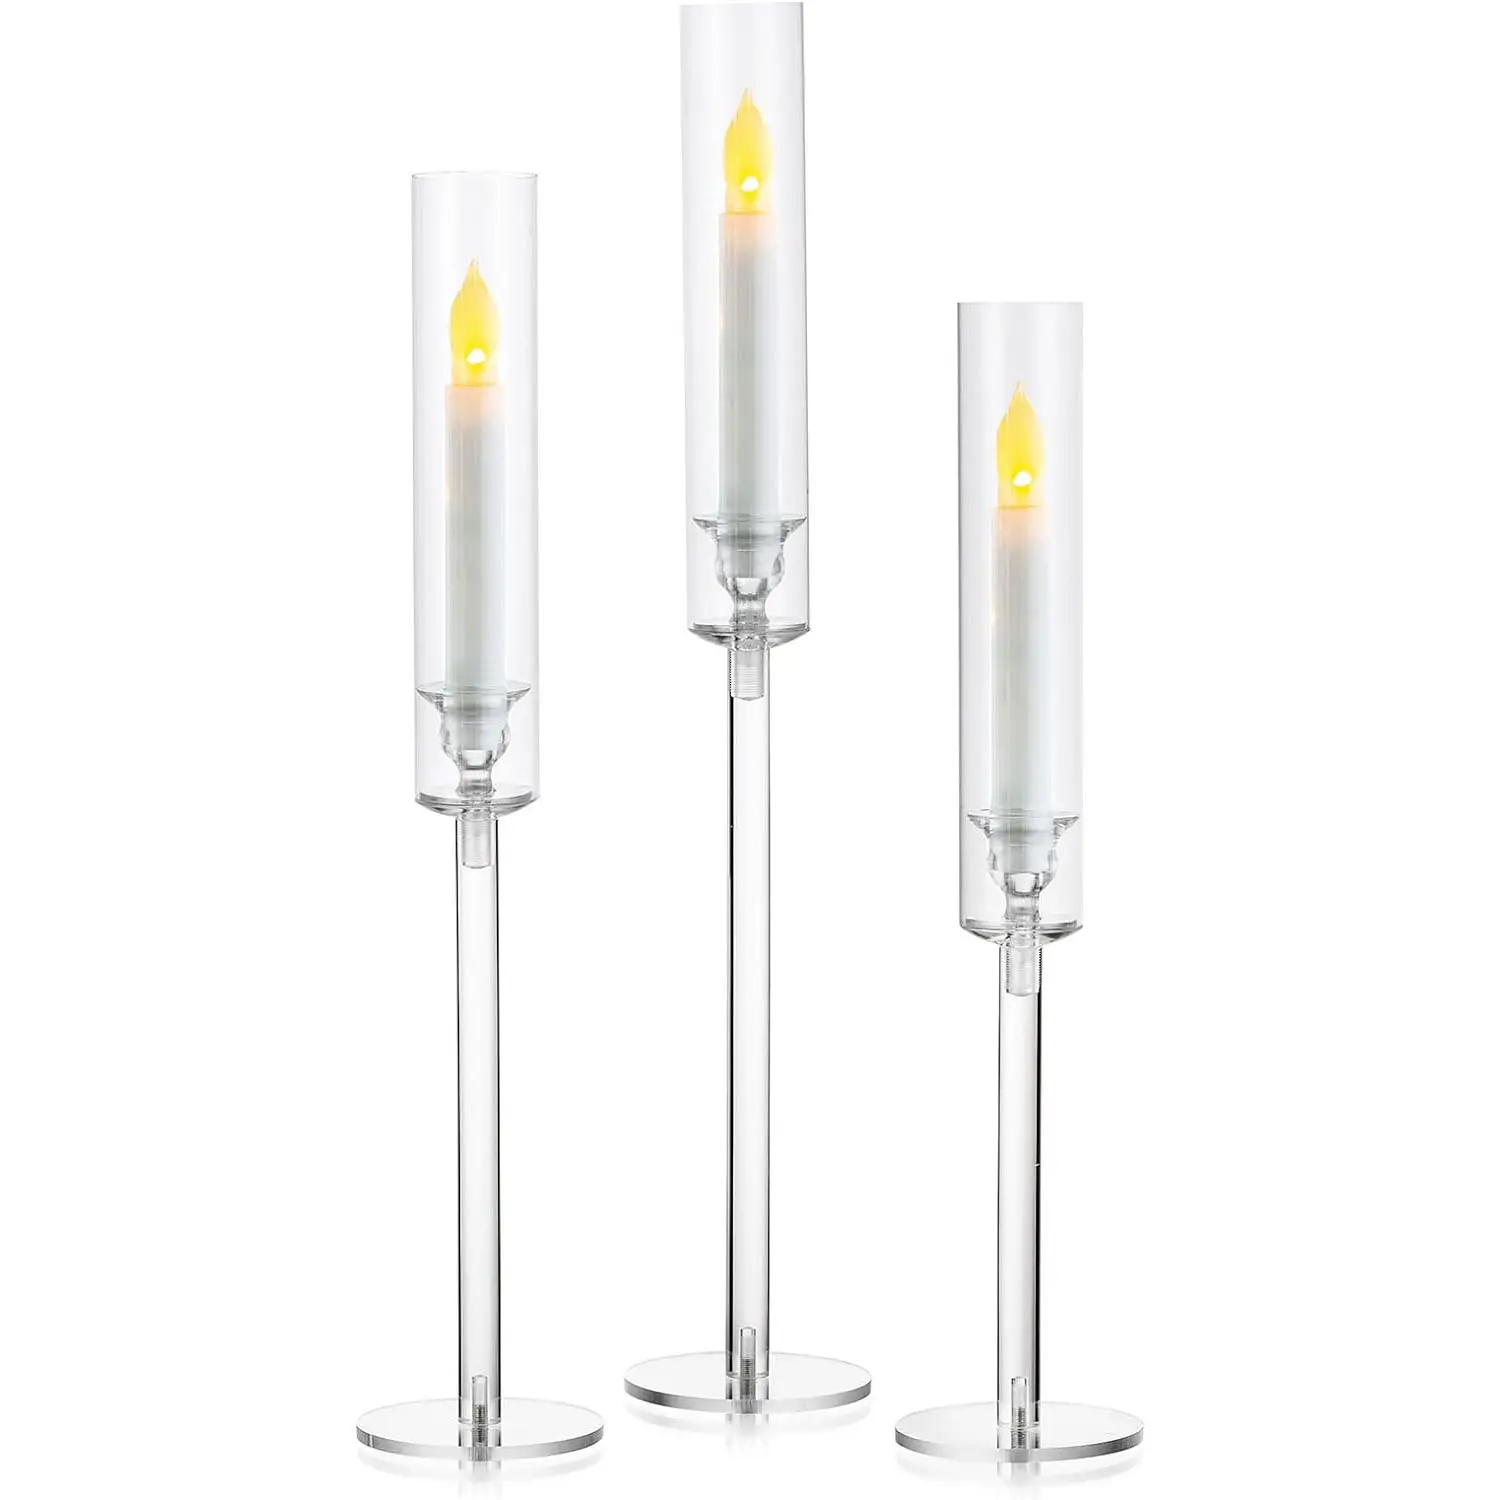 Portacandele in cristallo portacandele da tavolo centrotavola decorazione portacandele in acrilico trasparente adatto per candele a LED